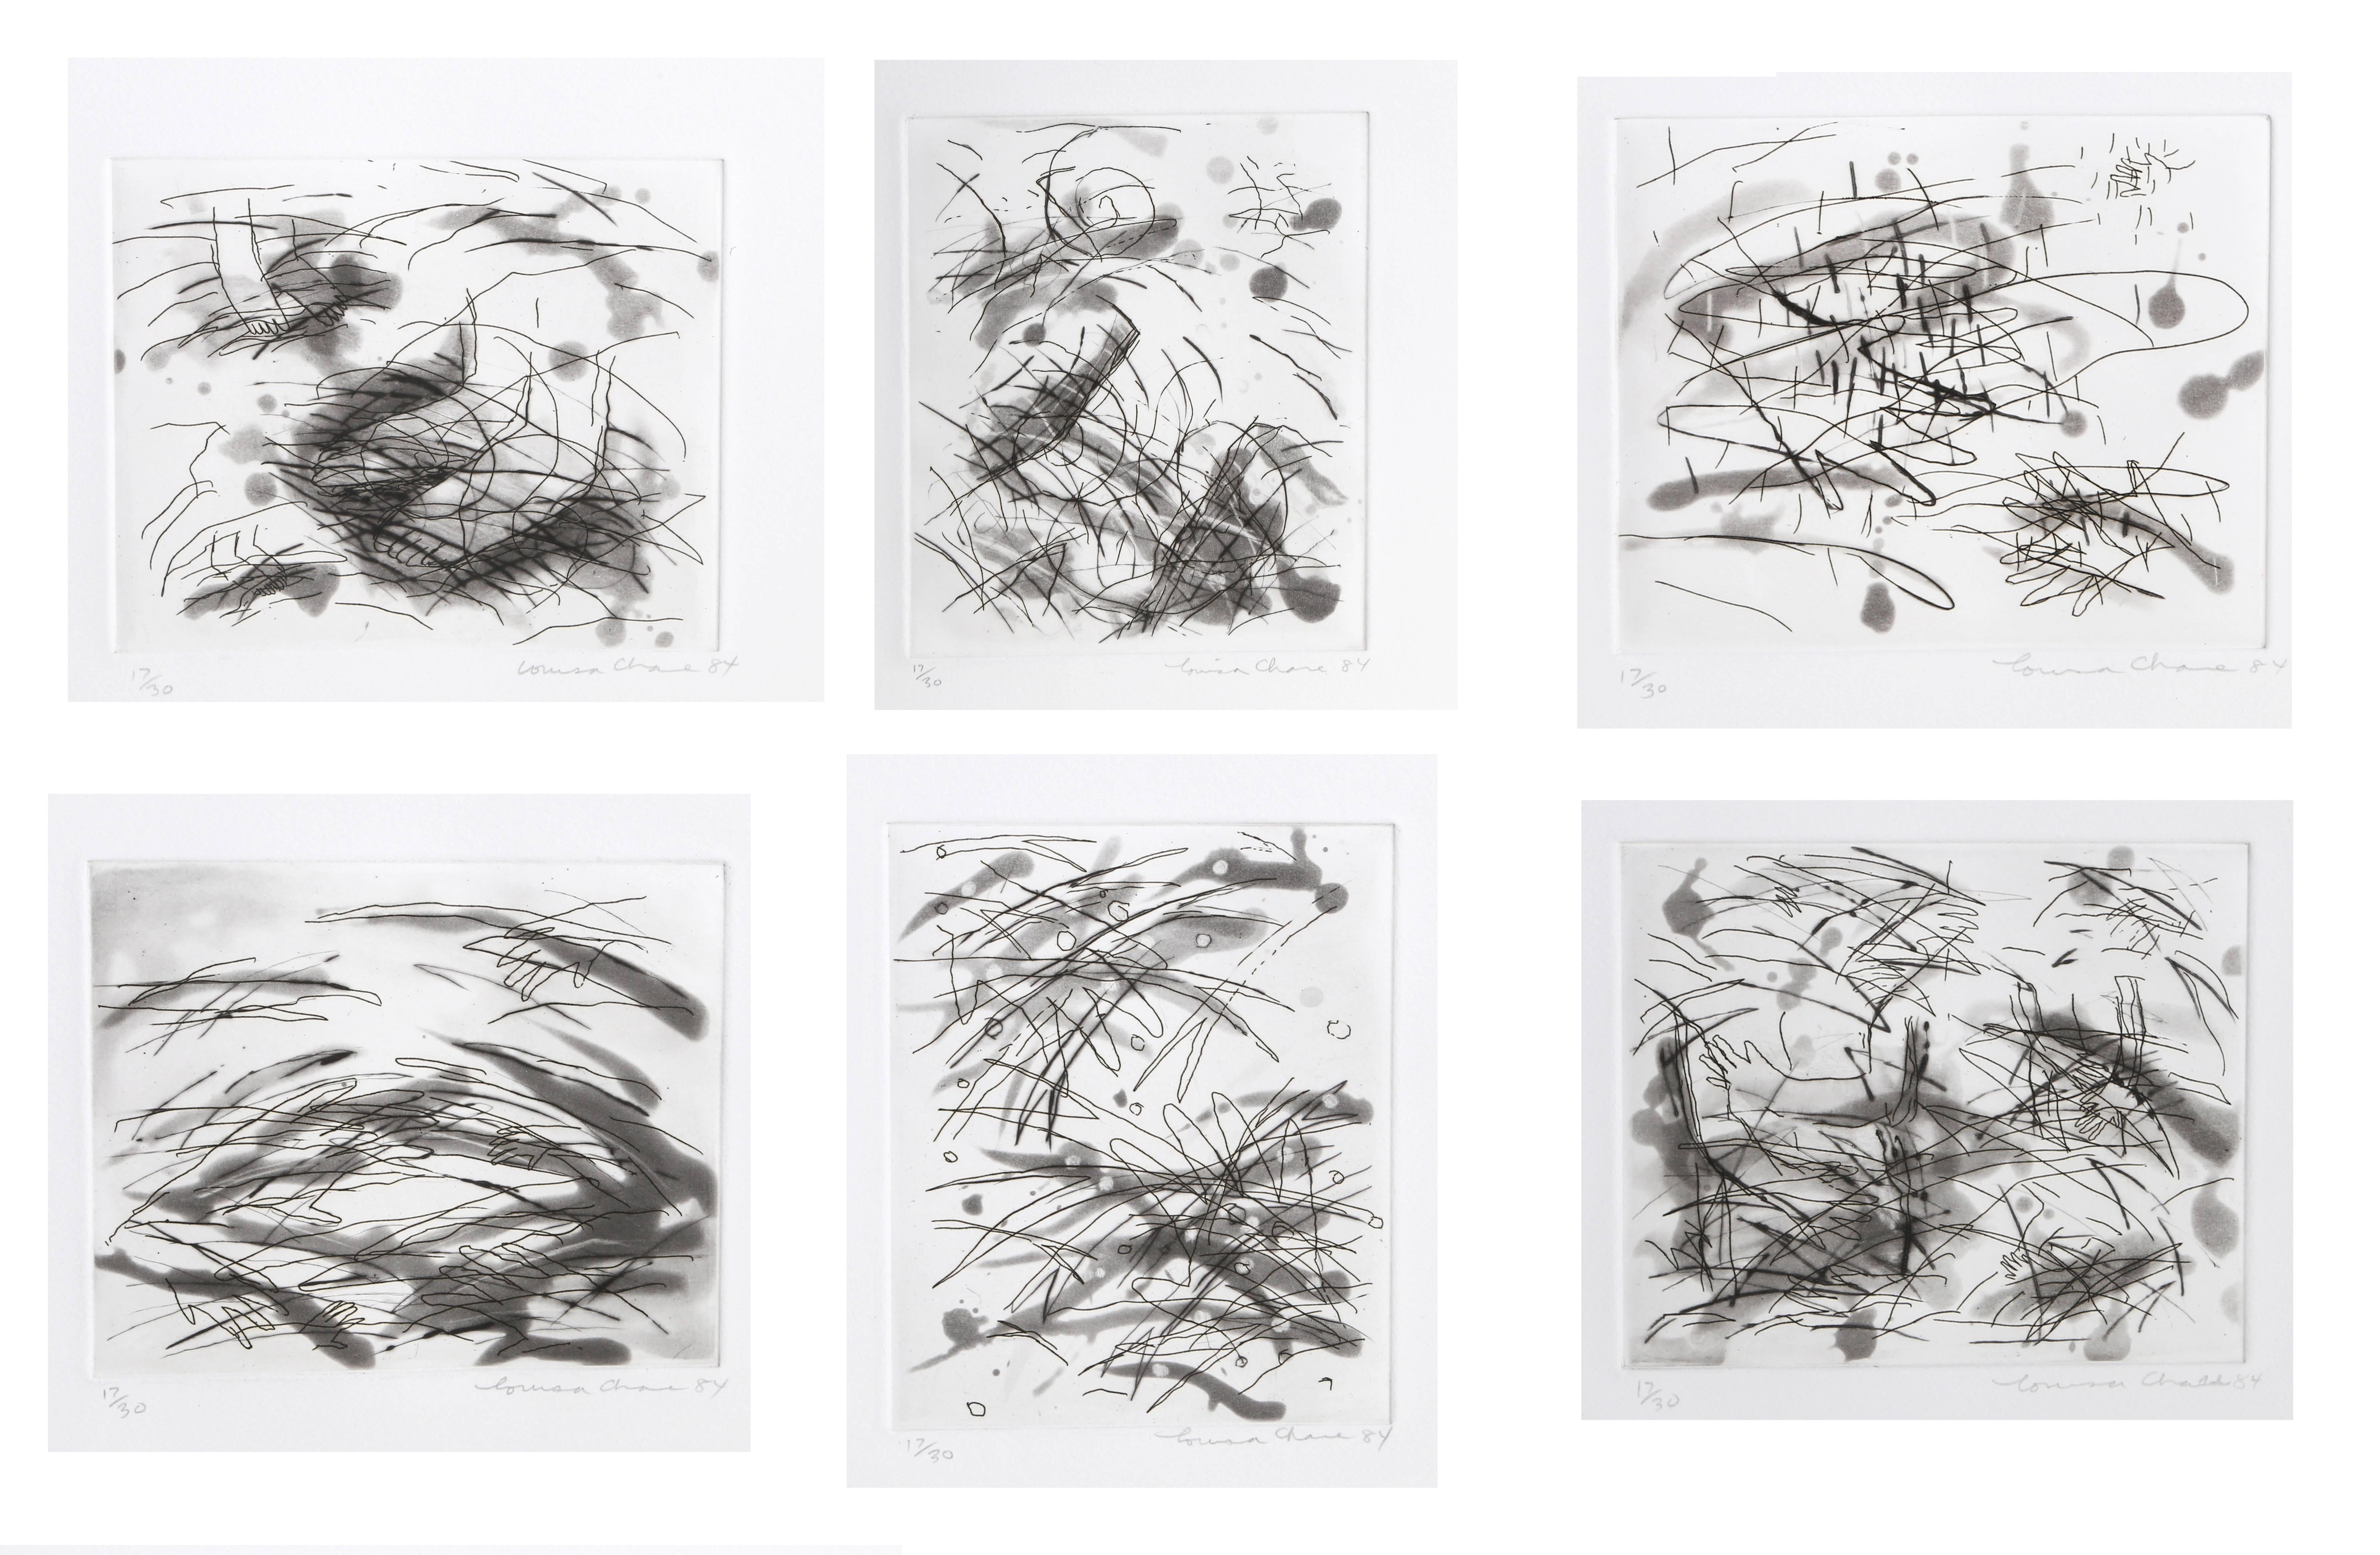 Artistics : Louisa Chase, Américaine (1951 - 2016)
Titre : Portefeuille de six gravures 
Année : 1984
Moyen : Six gravures à la pointe sèche avec aquatinte, signées et numérotées au crayon
Edition : 30
Format du papier : 11 x 11 pouces (27,94 x